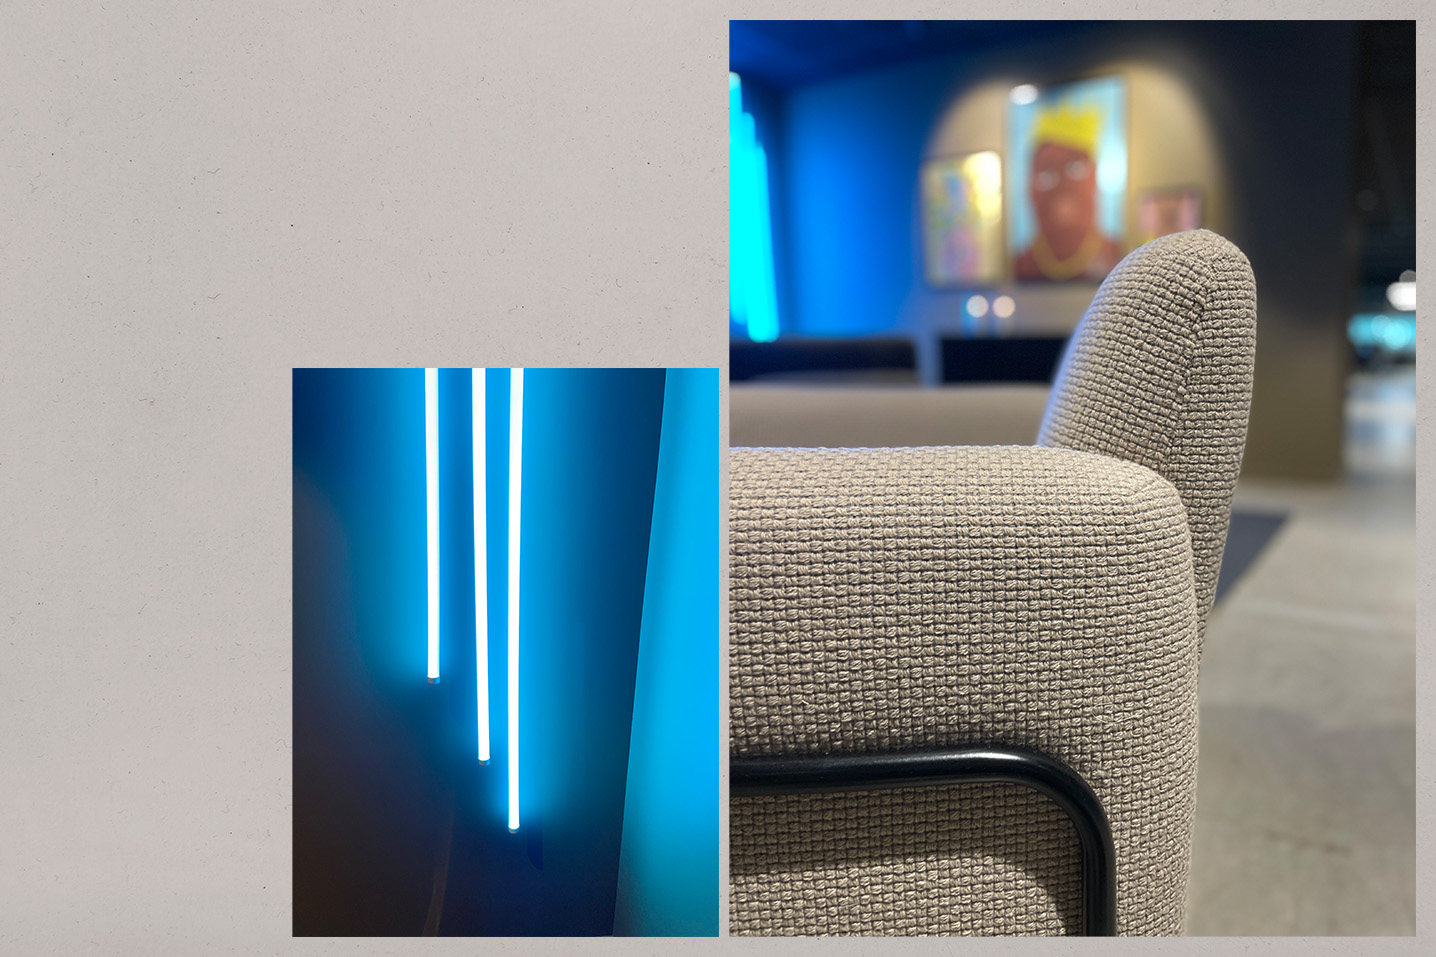 Detaljbilde av stol i lys beige farge med industrielt preg. I bakgrunnen er det dekorbelysniing i neonblått og moderne kunst.